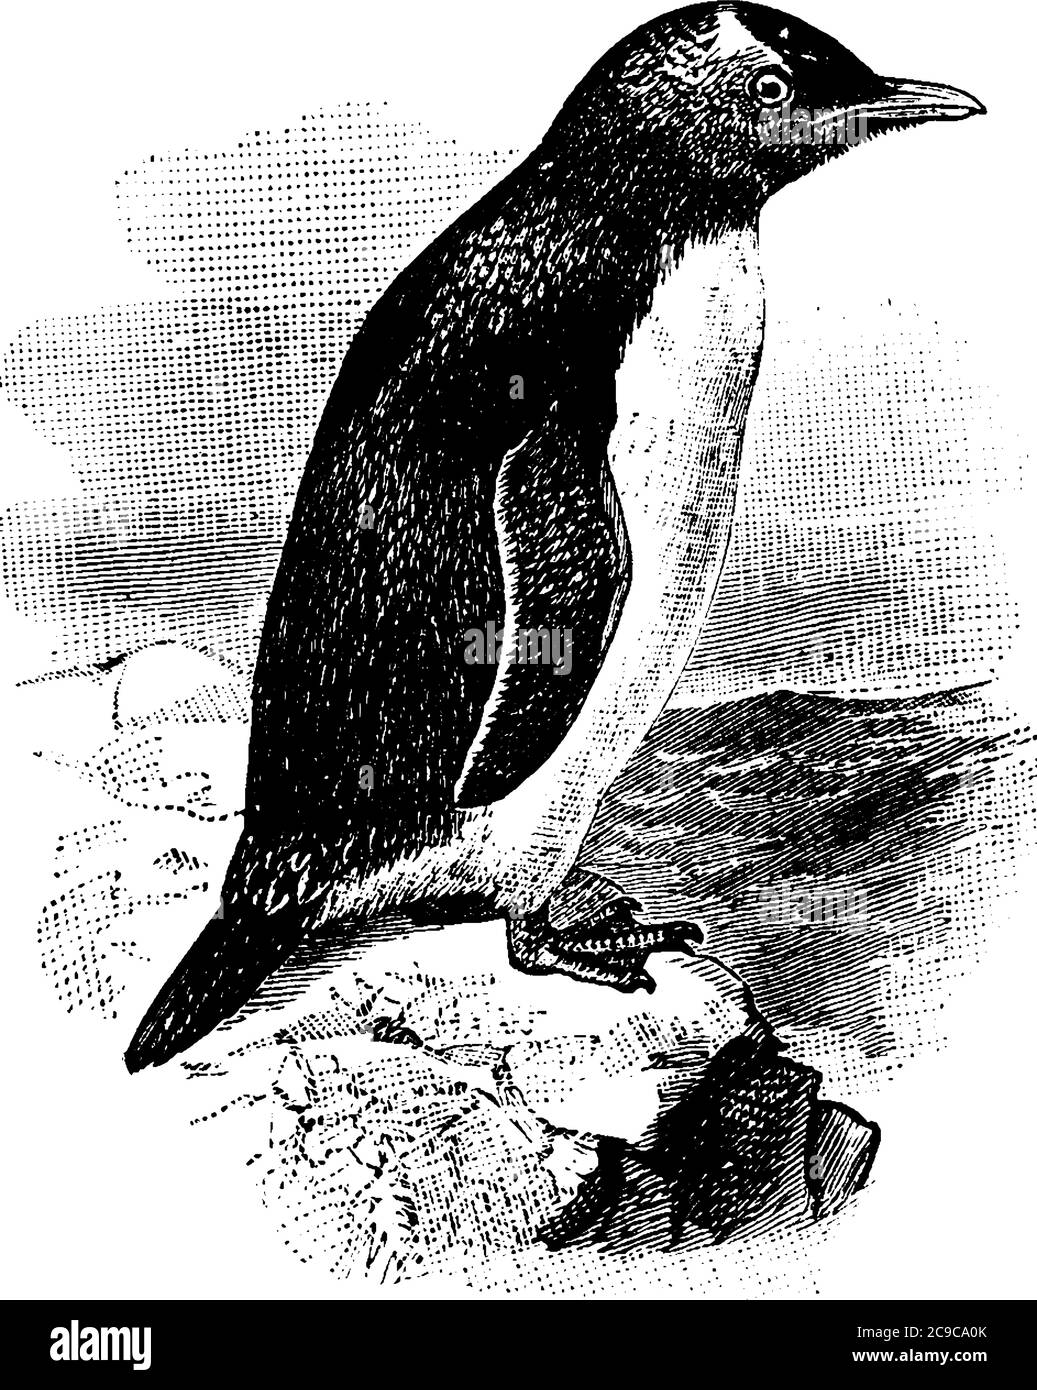 Uccelli acquatici senza luce, i pinguini hanno contrombreggiato nero e piumaggio bianco. Qui è mostrato un tale uccello, appollaiato su una roccia, disegno di linea d'annata o. Illustrazione Vettoriale